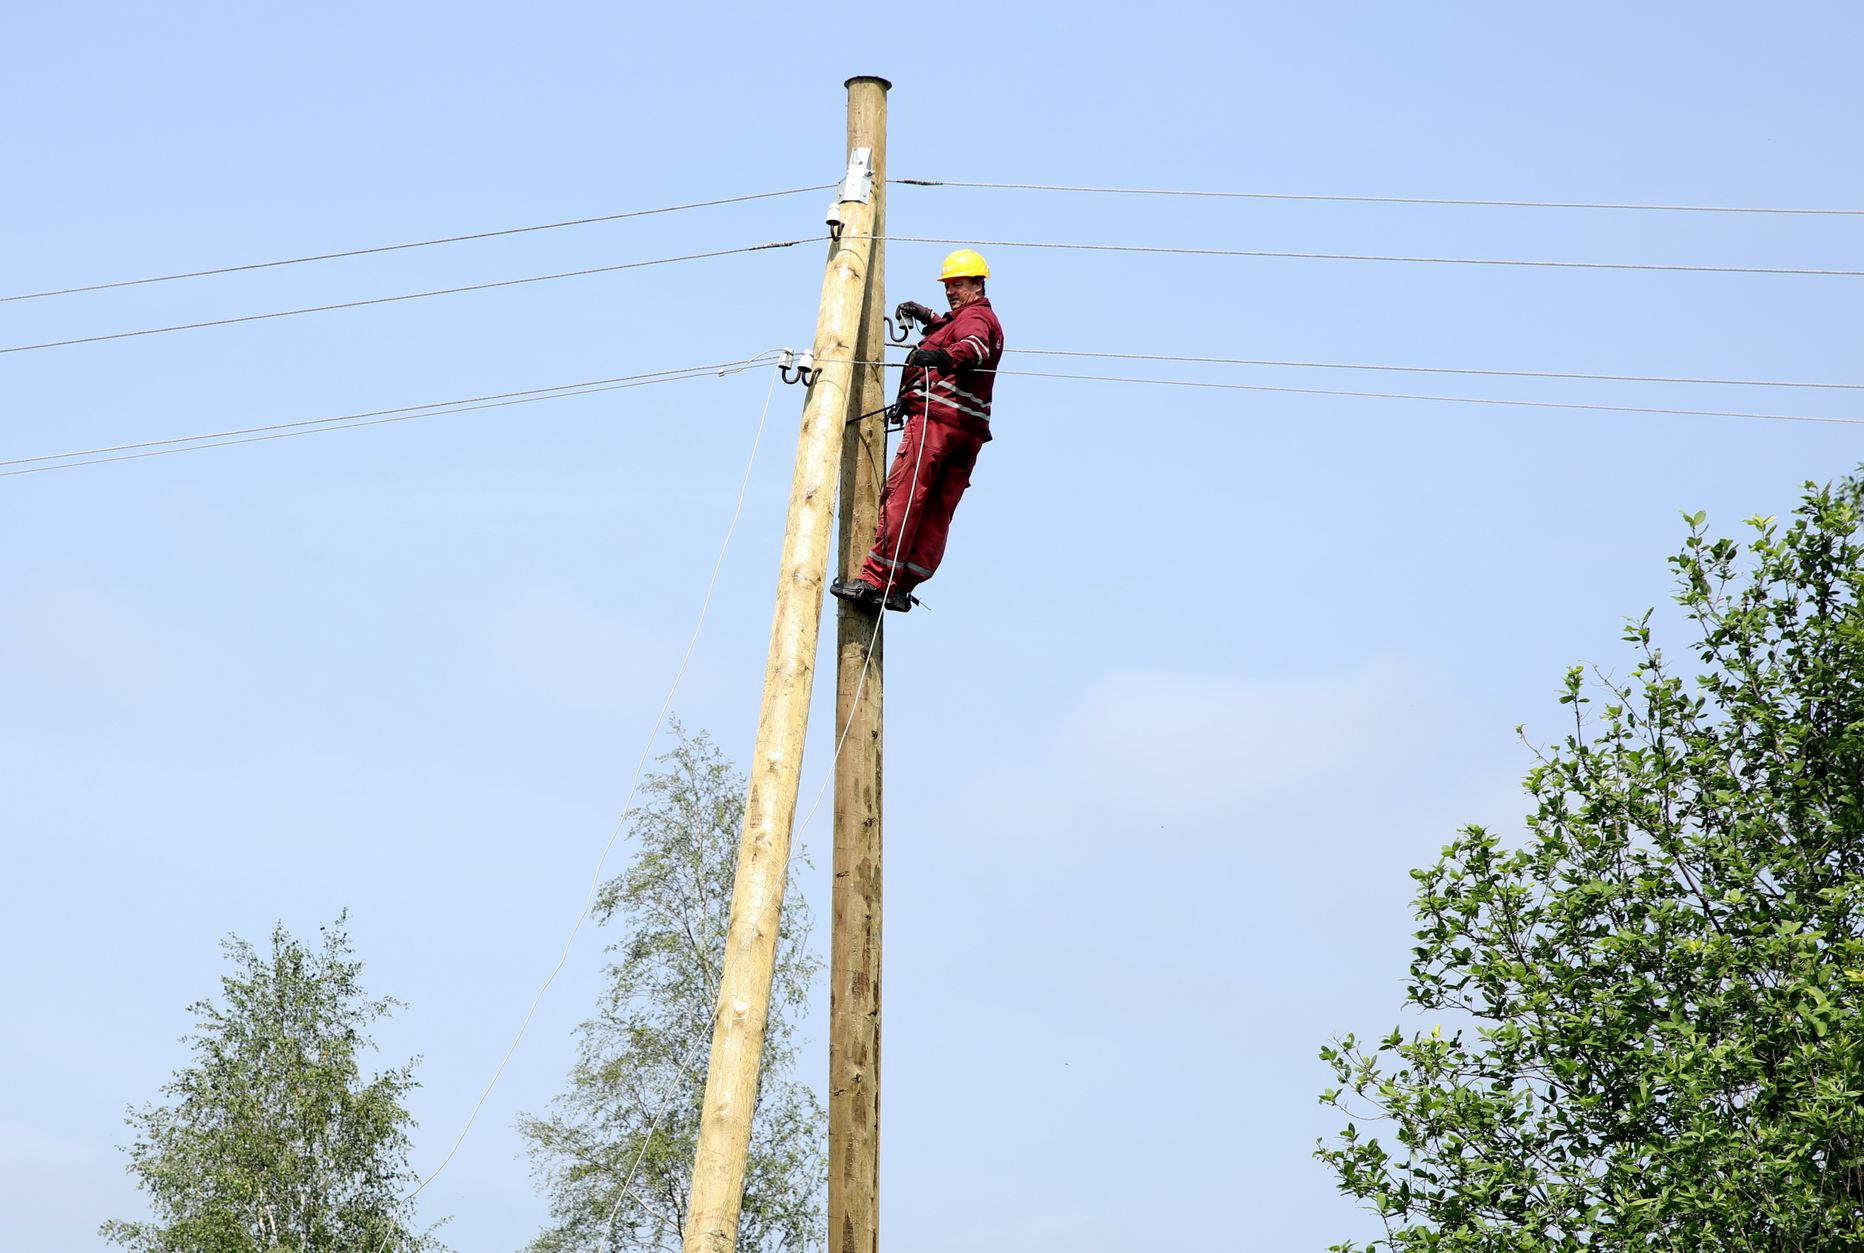 AS "Sadales tīkls" darbinieks atjauno elektroapgādi Jaunsātu pagastā, kur otrdienas vakarā plosījās vētra.